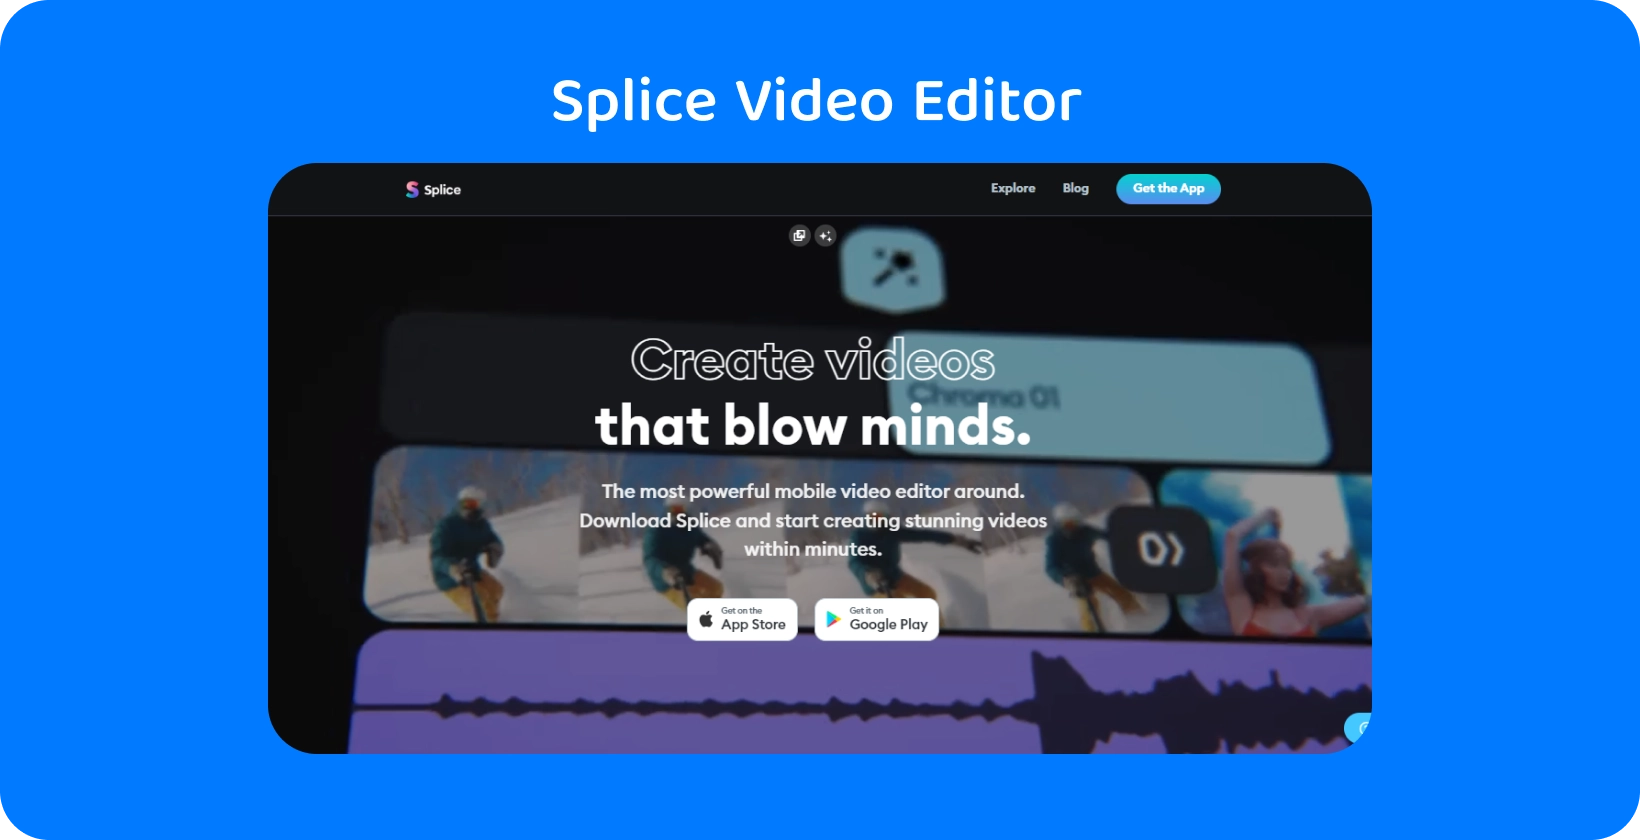 Splice promoção de aplicativo em um smartphone, divulgando-o como o editor de vídeo móvel mais poderoso para criar vídeos impressionantes.